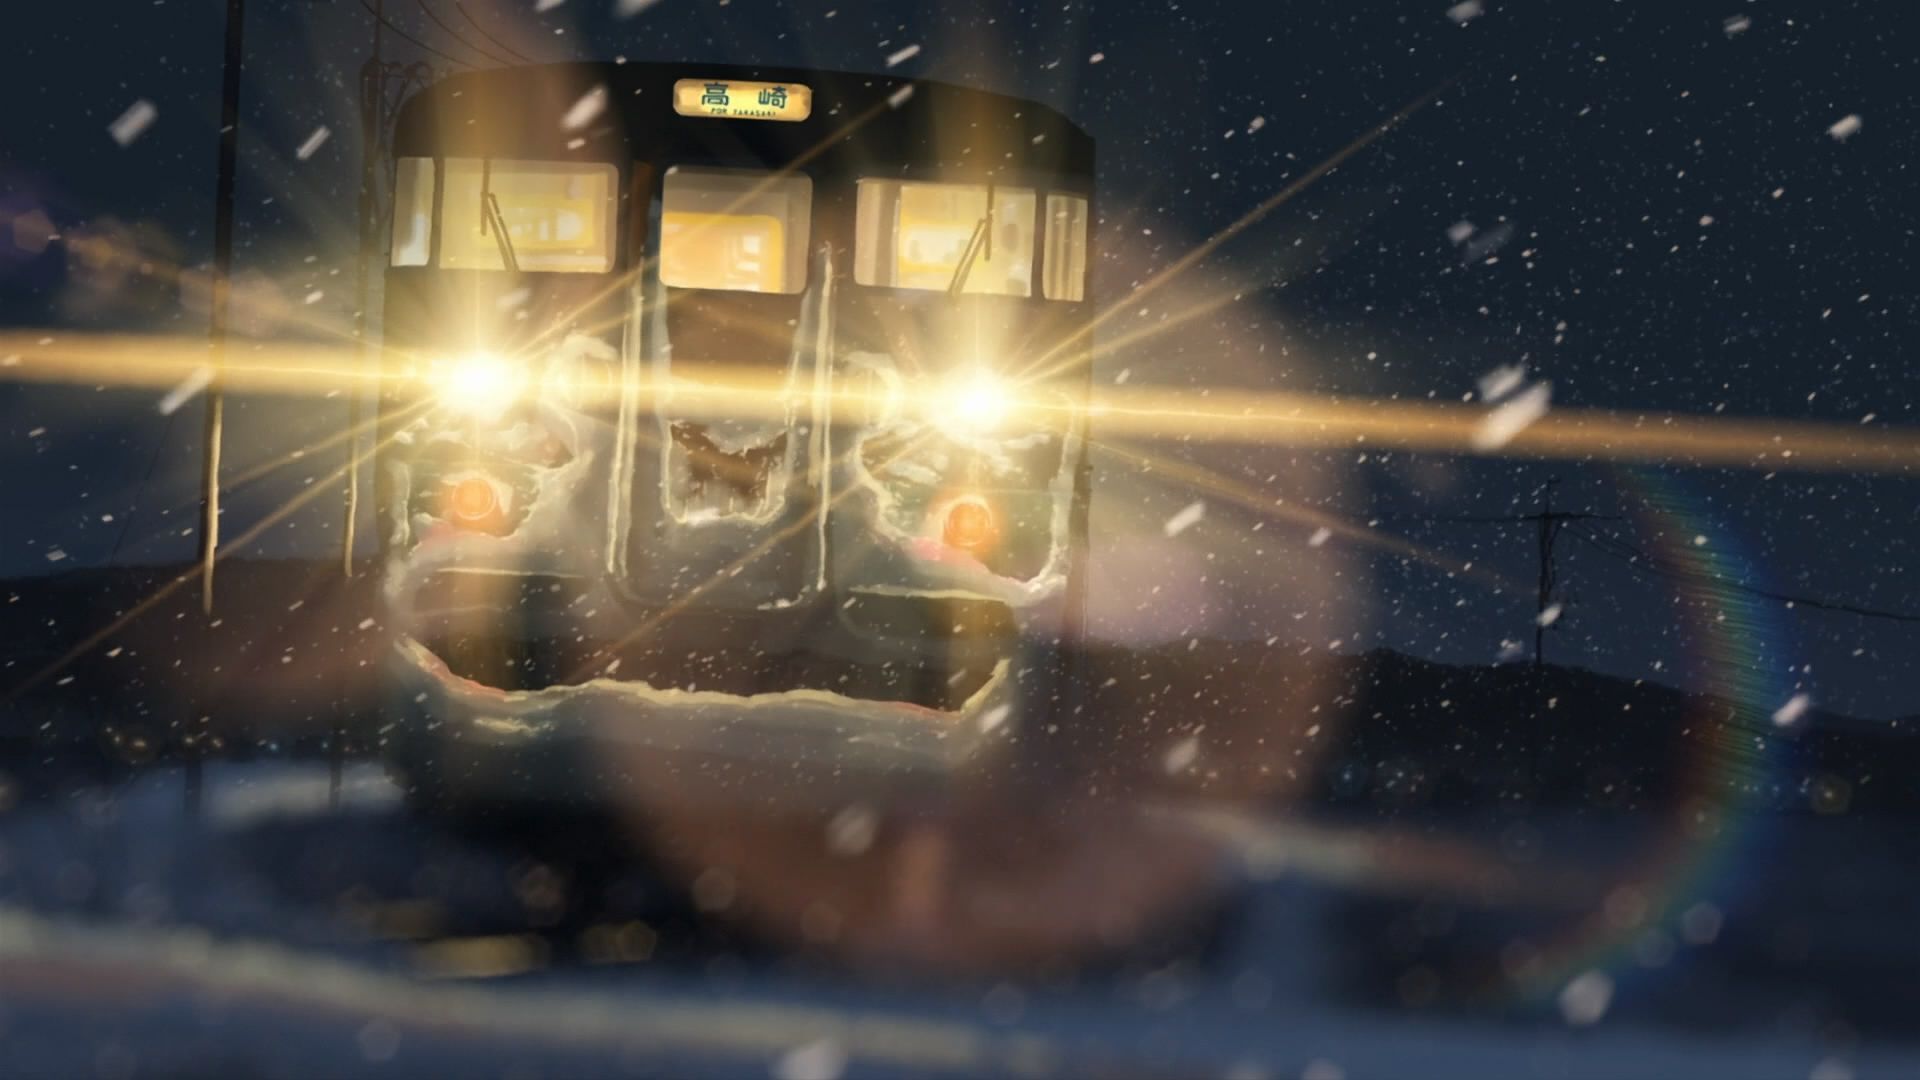 снег, поезда, Макото Синкай, светофоры, 5 сантиметров в секунду - обои на рабочий стол